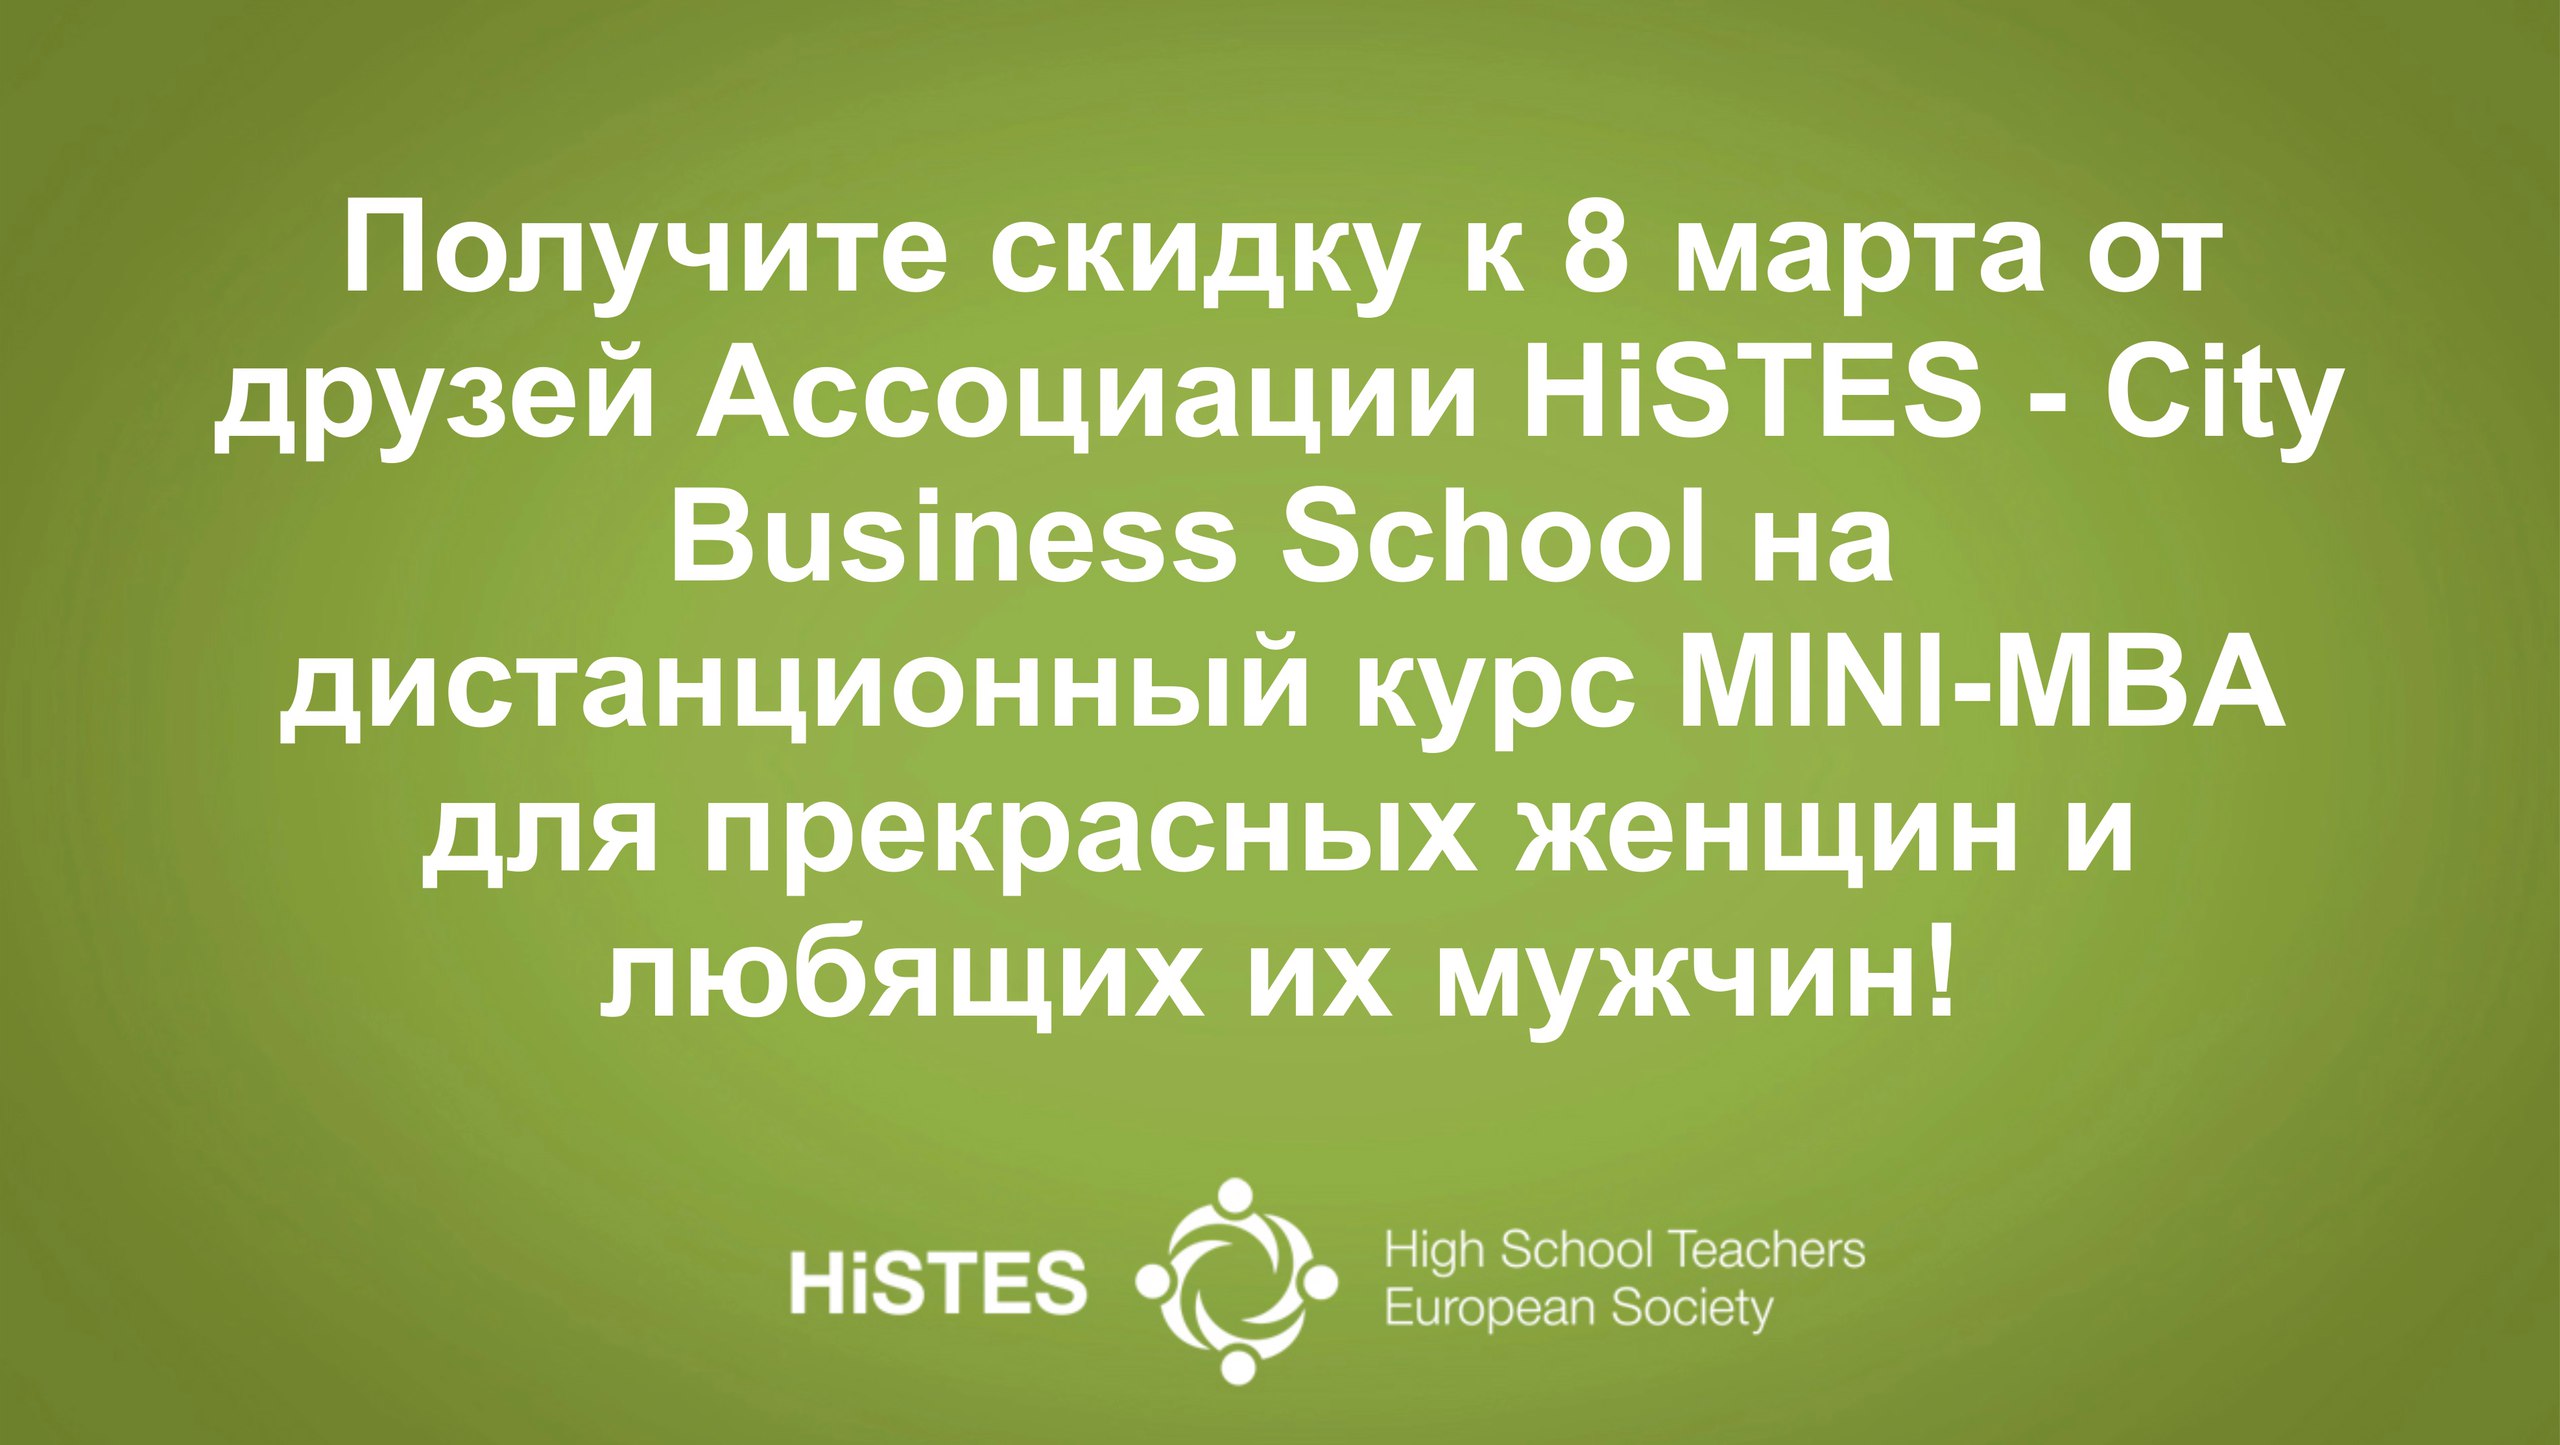 Европейская Ассоциация ВУЗов и преподавателей высшей школы HiSTES - High School Teachers European Society